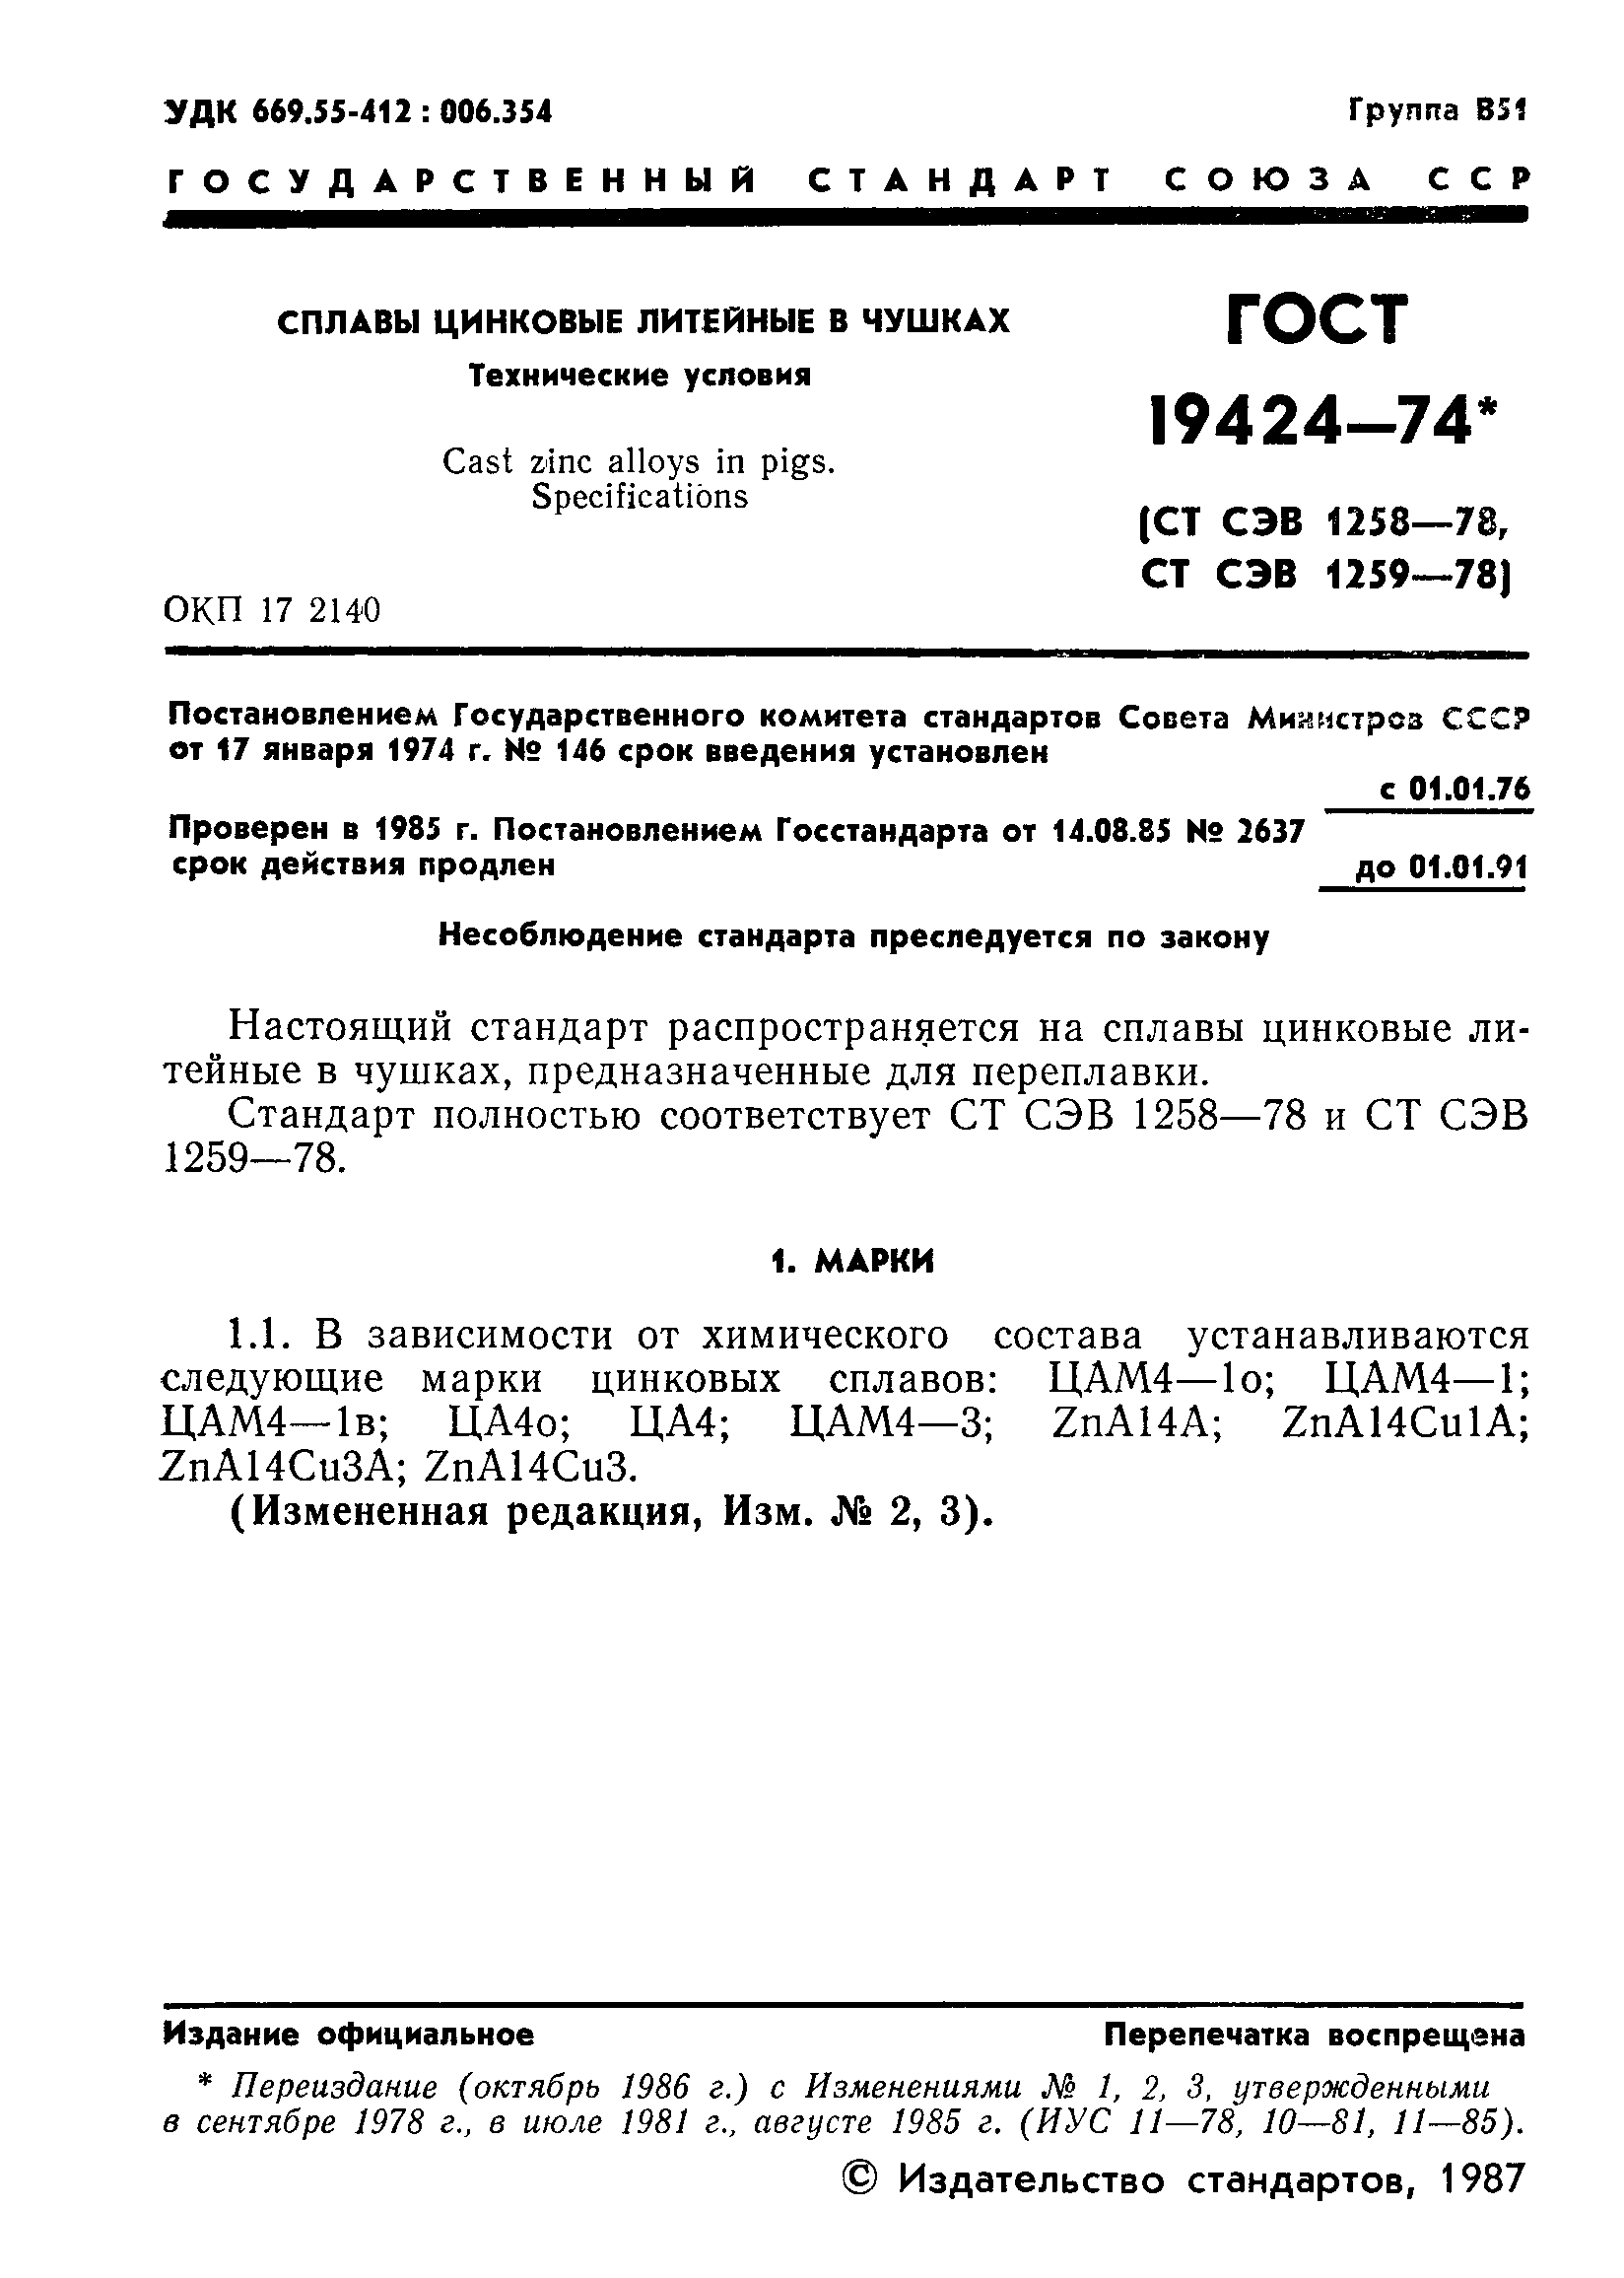  19424-74.  2